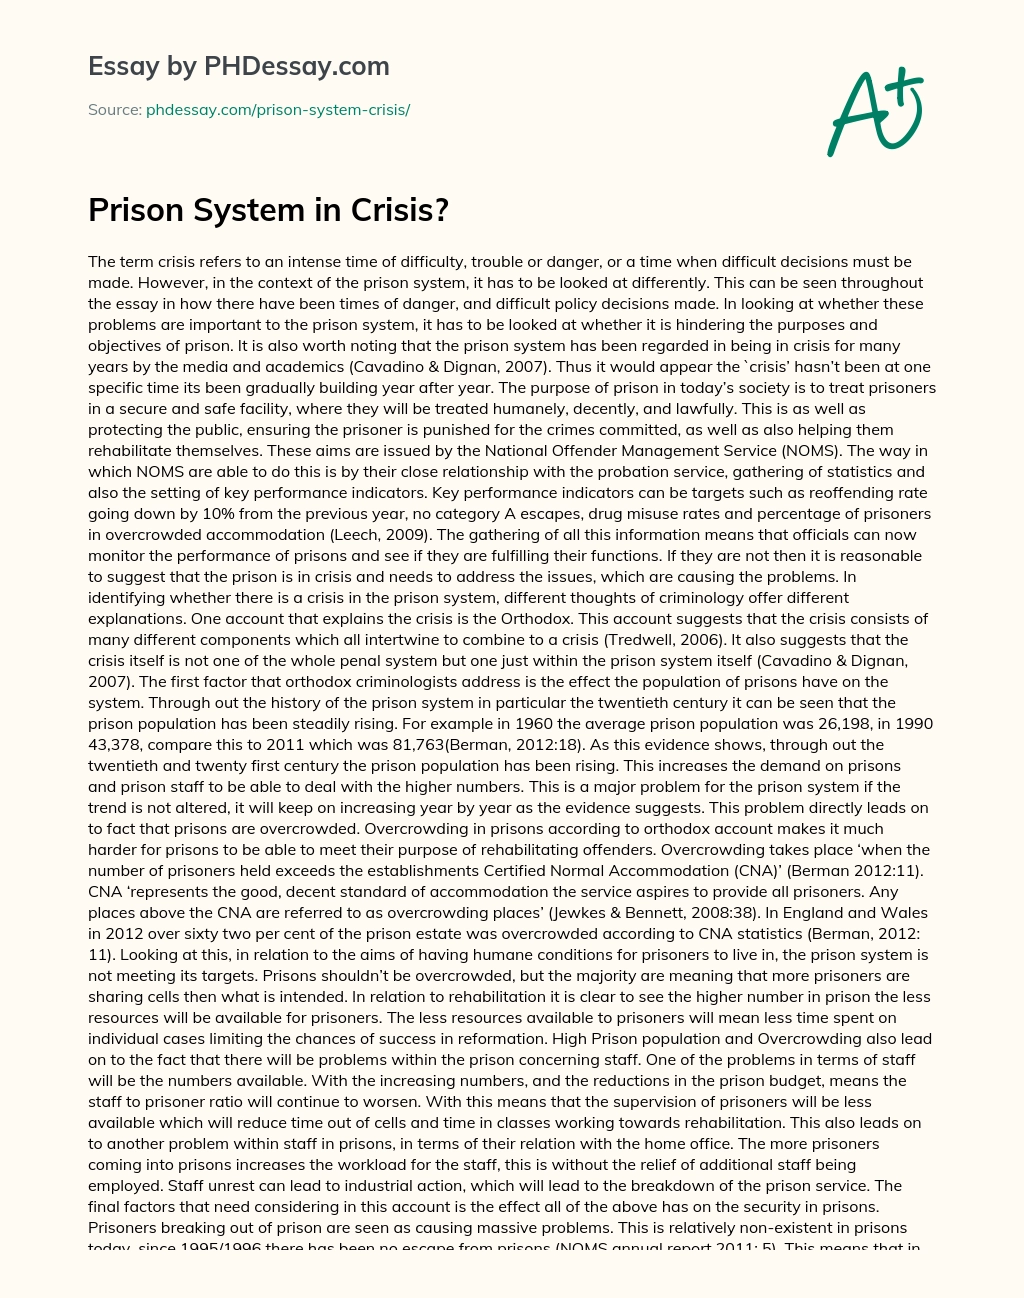 Are Prison System in Crisis? essay